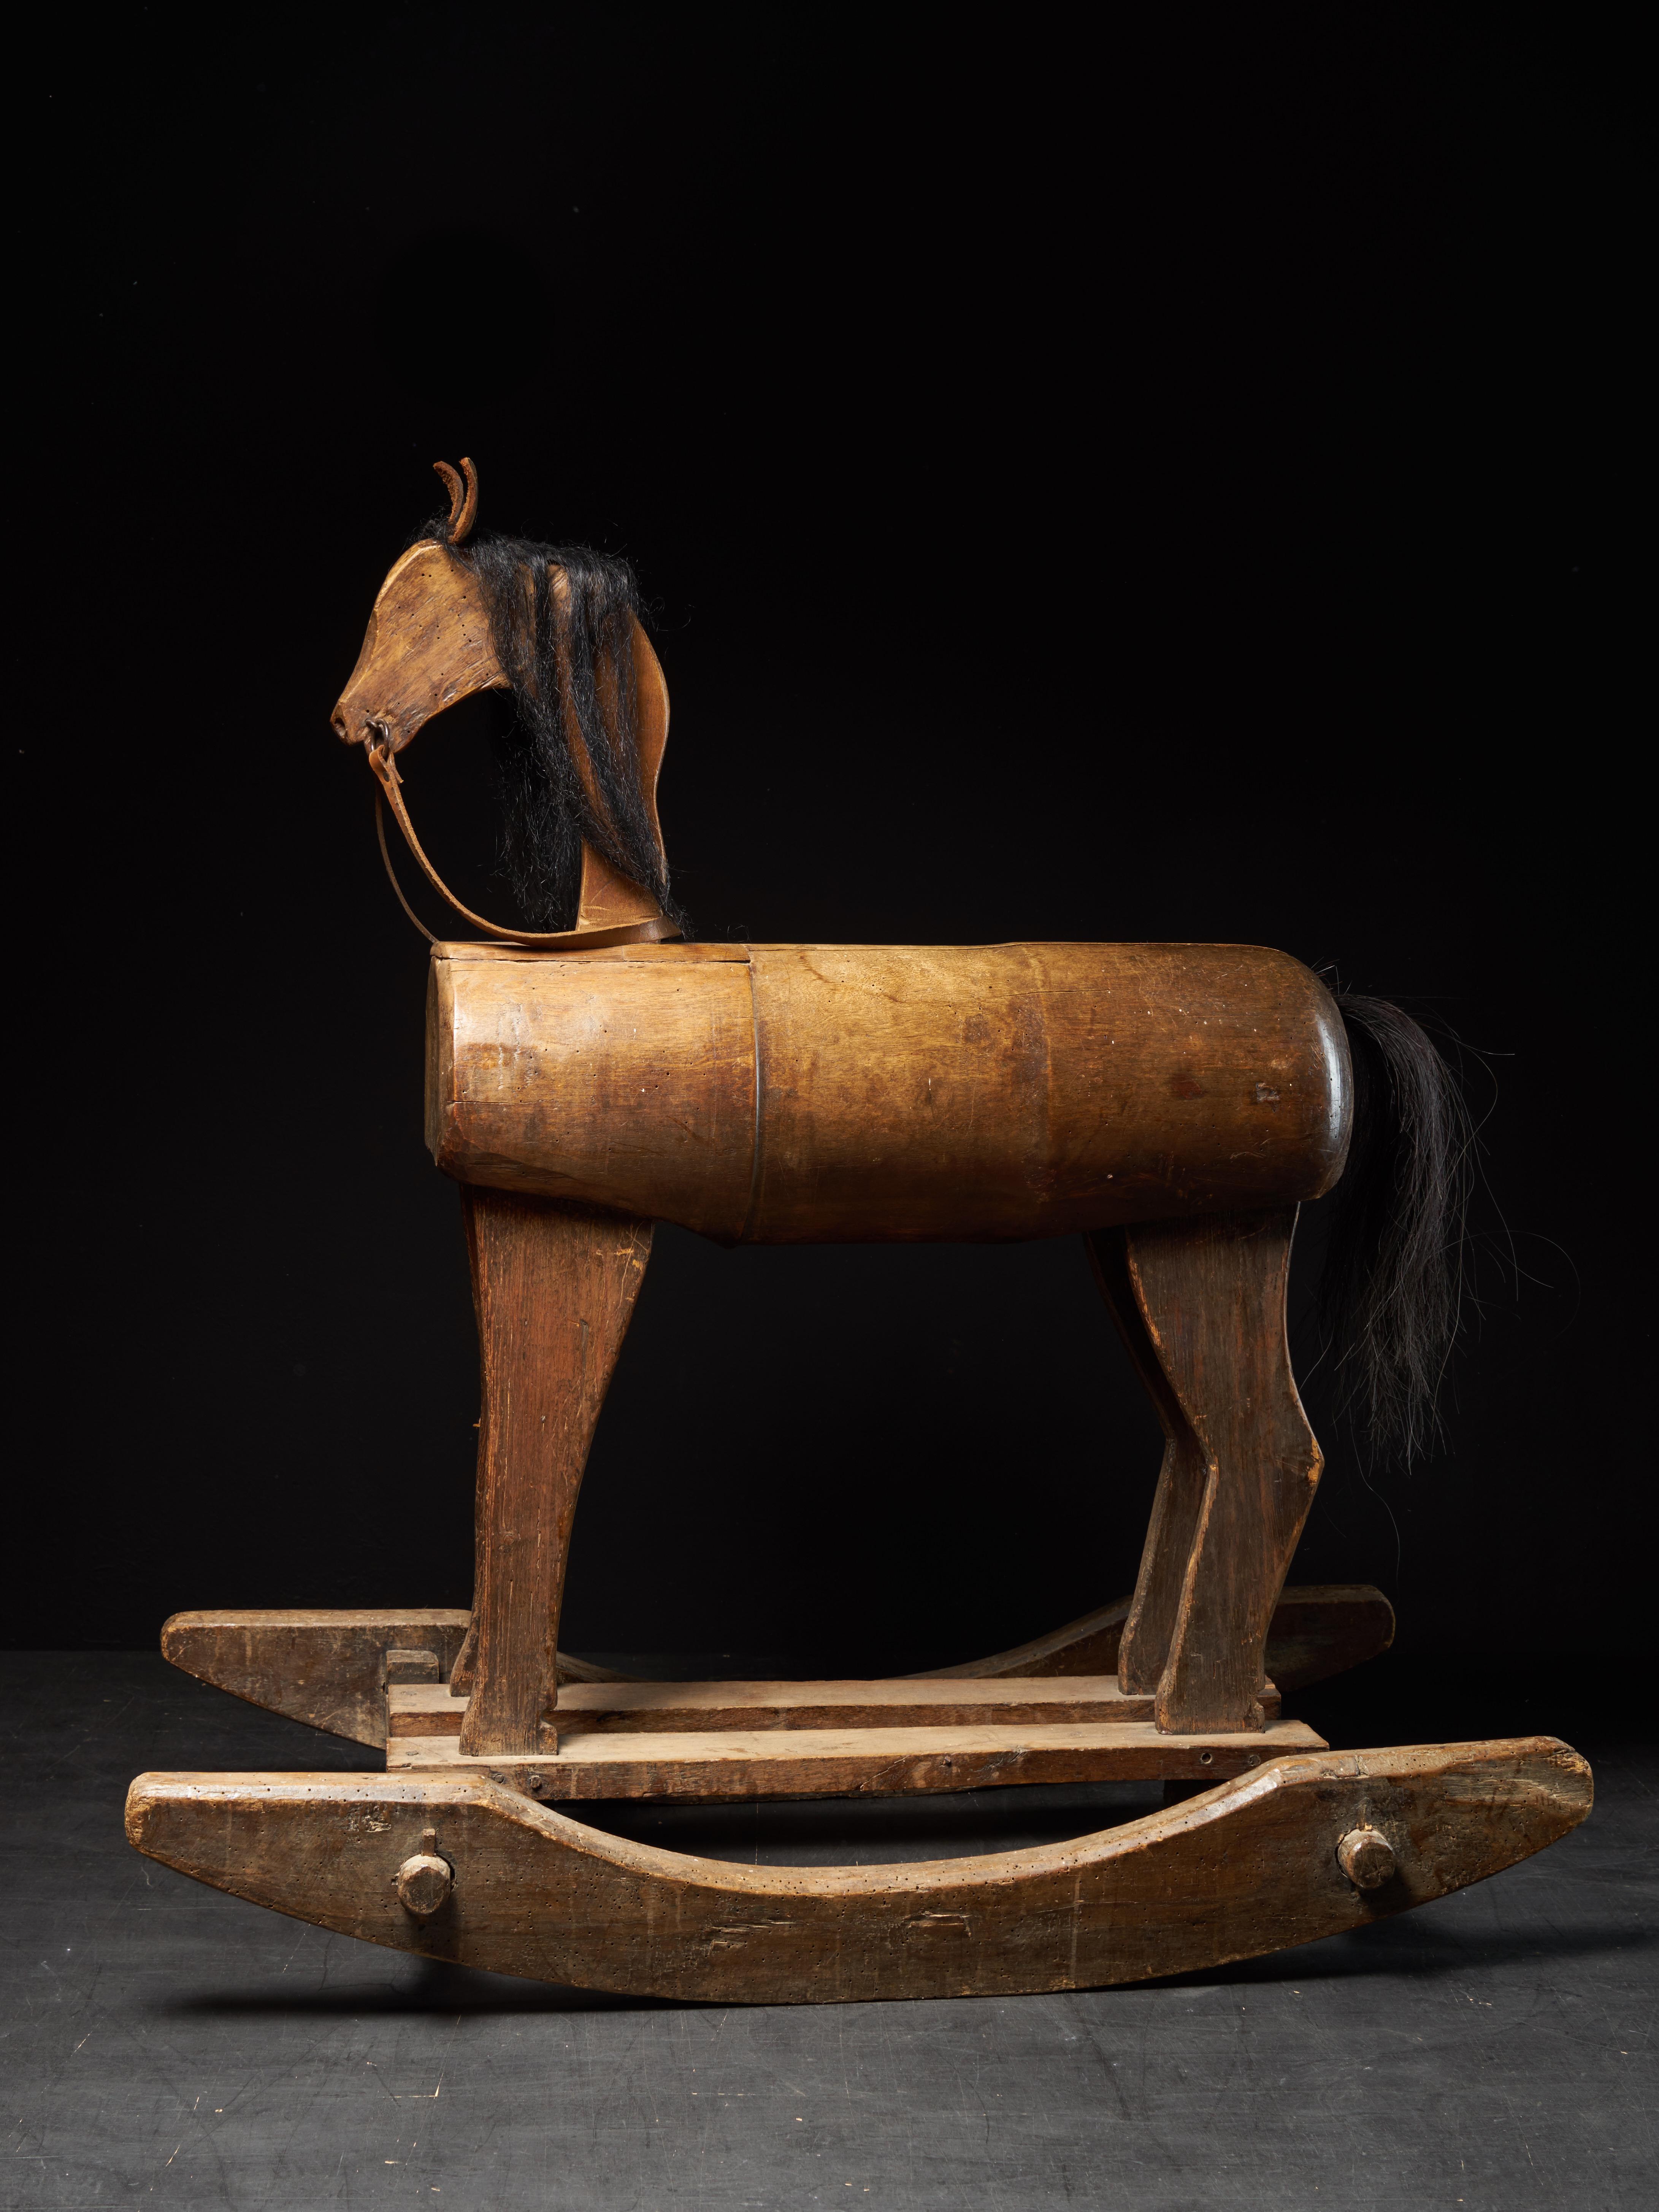 Le cheval à bascule a été fabriqué dans la première moitié du 20e siècle au Royaume-Uni. Les oreilles et les rênes sont en cuir brun clair. La tête et la queue du cheval sont faites de vrais poils et le corps, les jambes et la partie inférieure sont